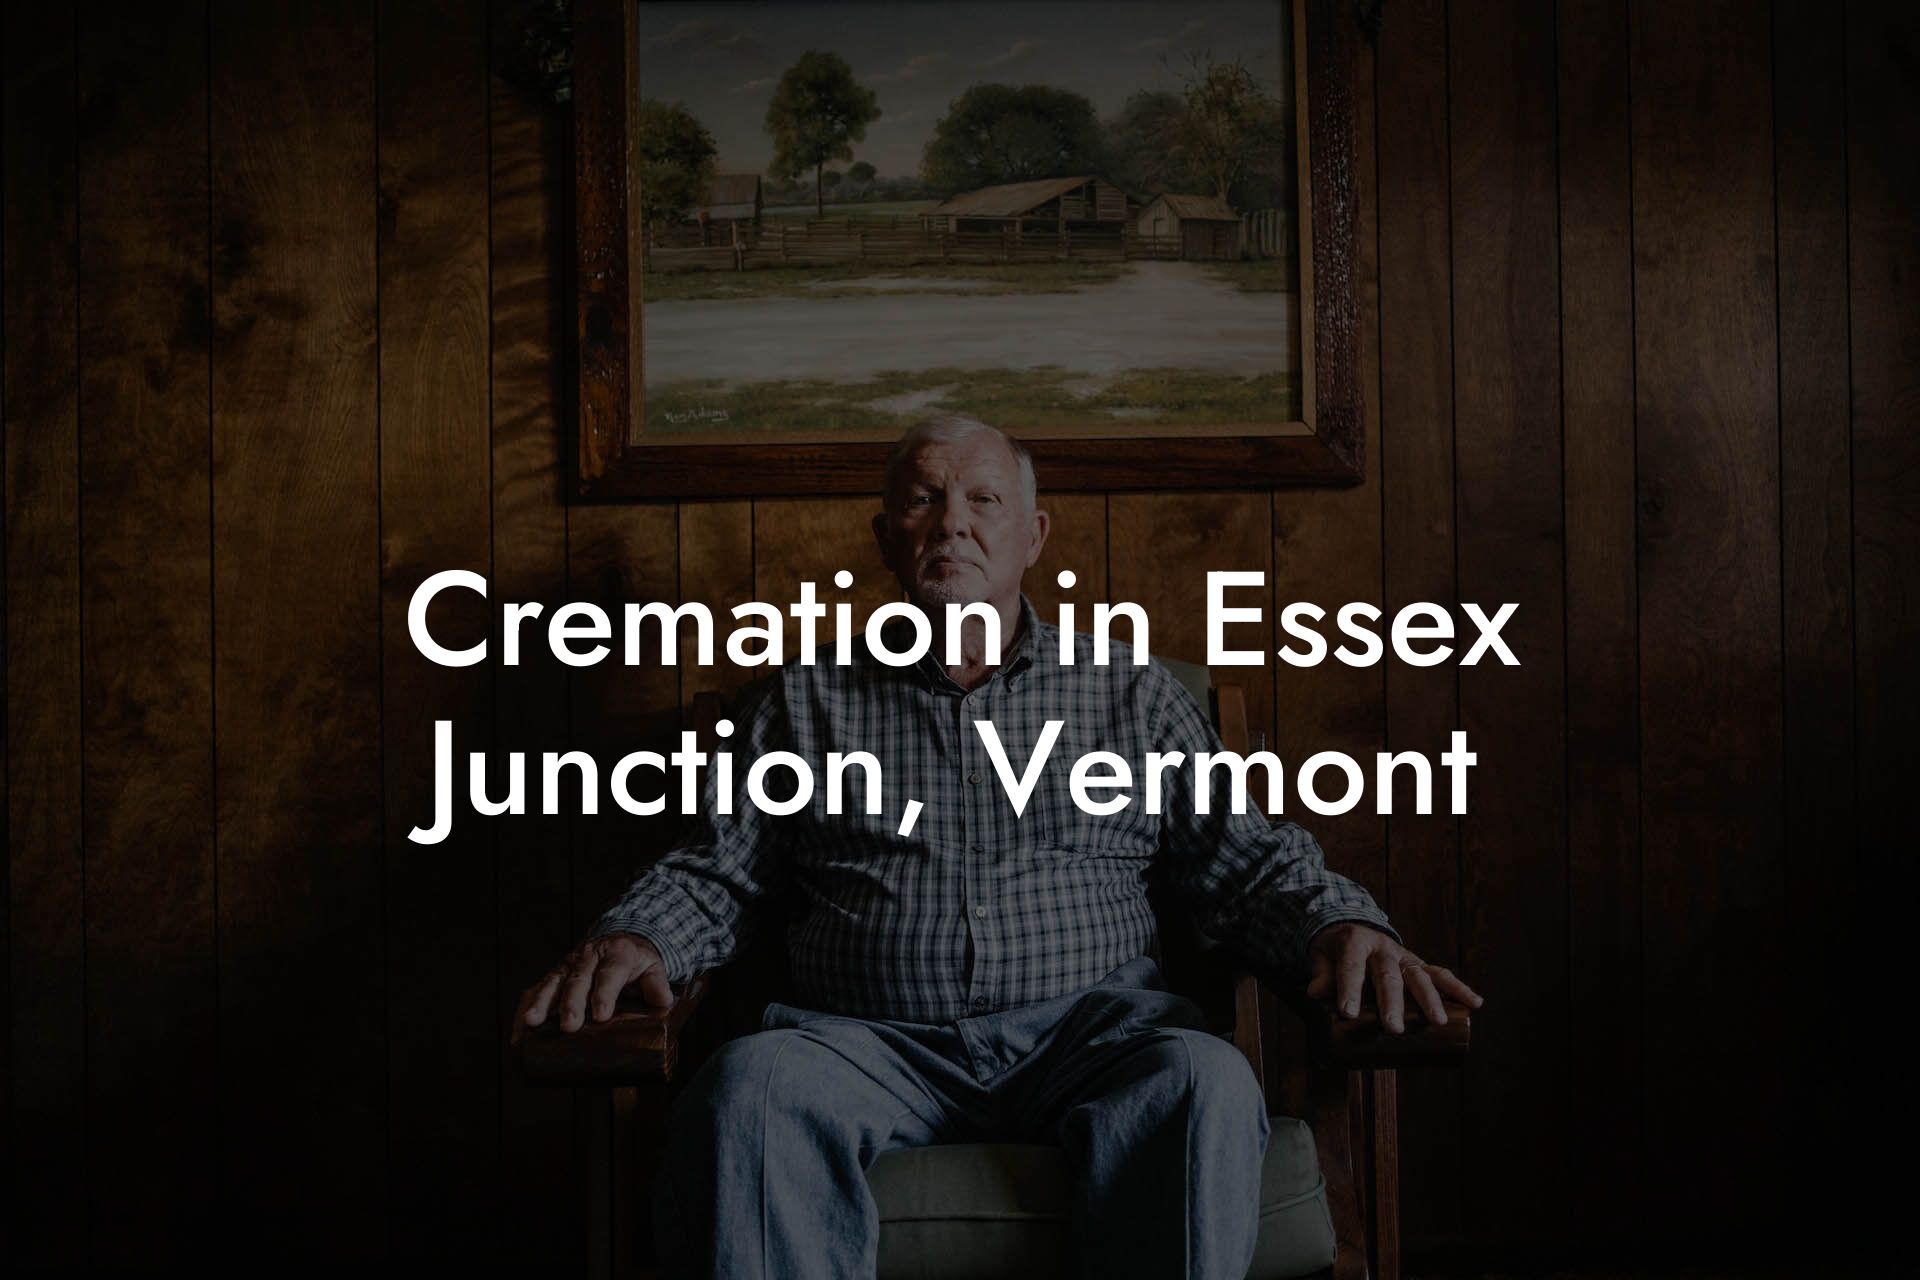 Cremation in Essex Junction, Vermont